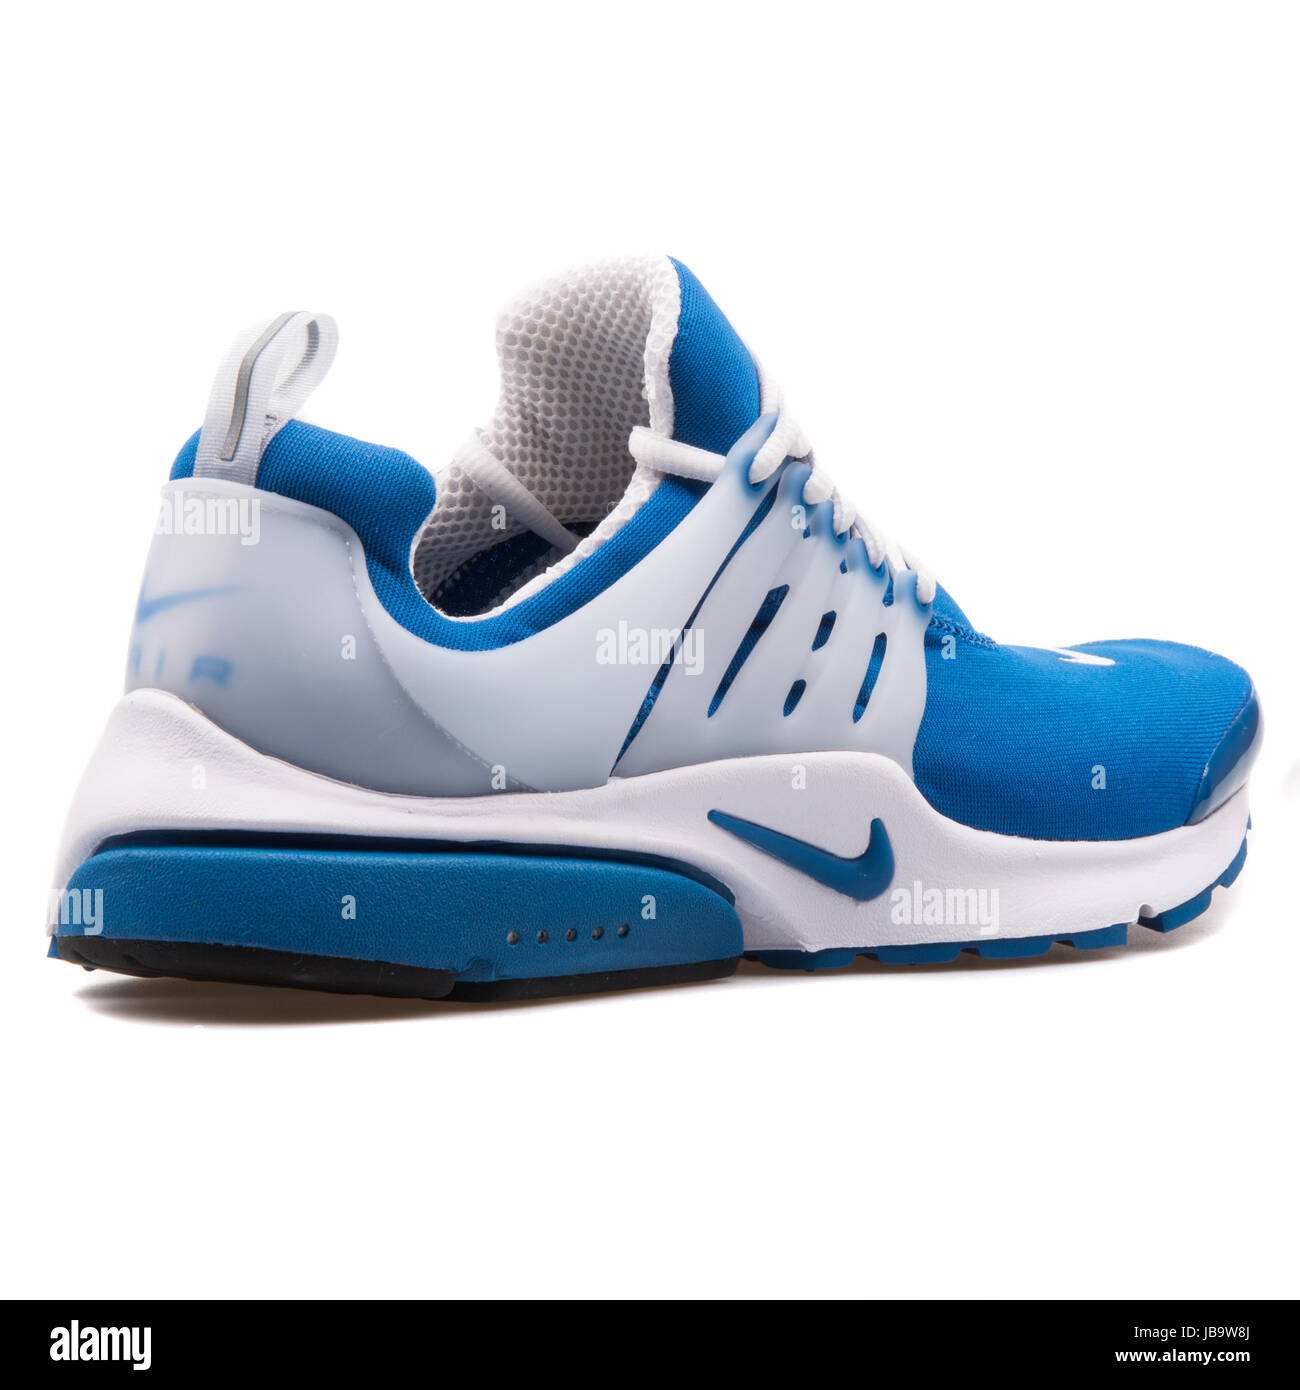 Nike Air Presto QS azul y blanco, los hombres calzados running - Fotografía de stock - Alamy